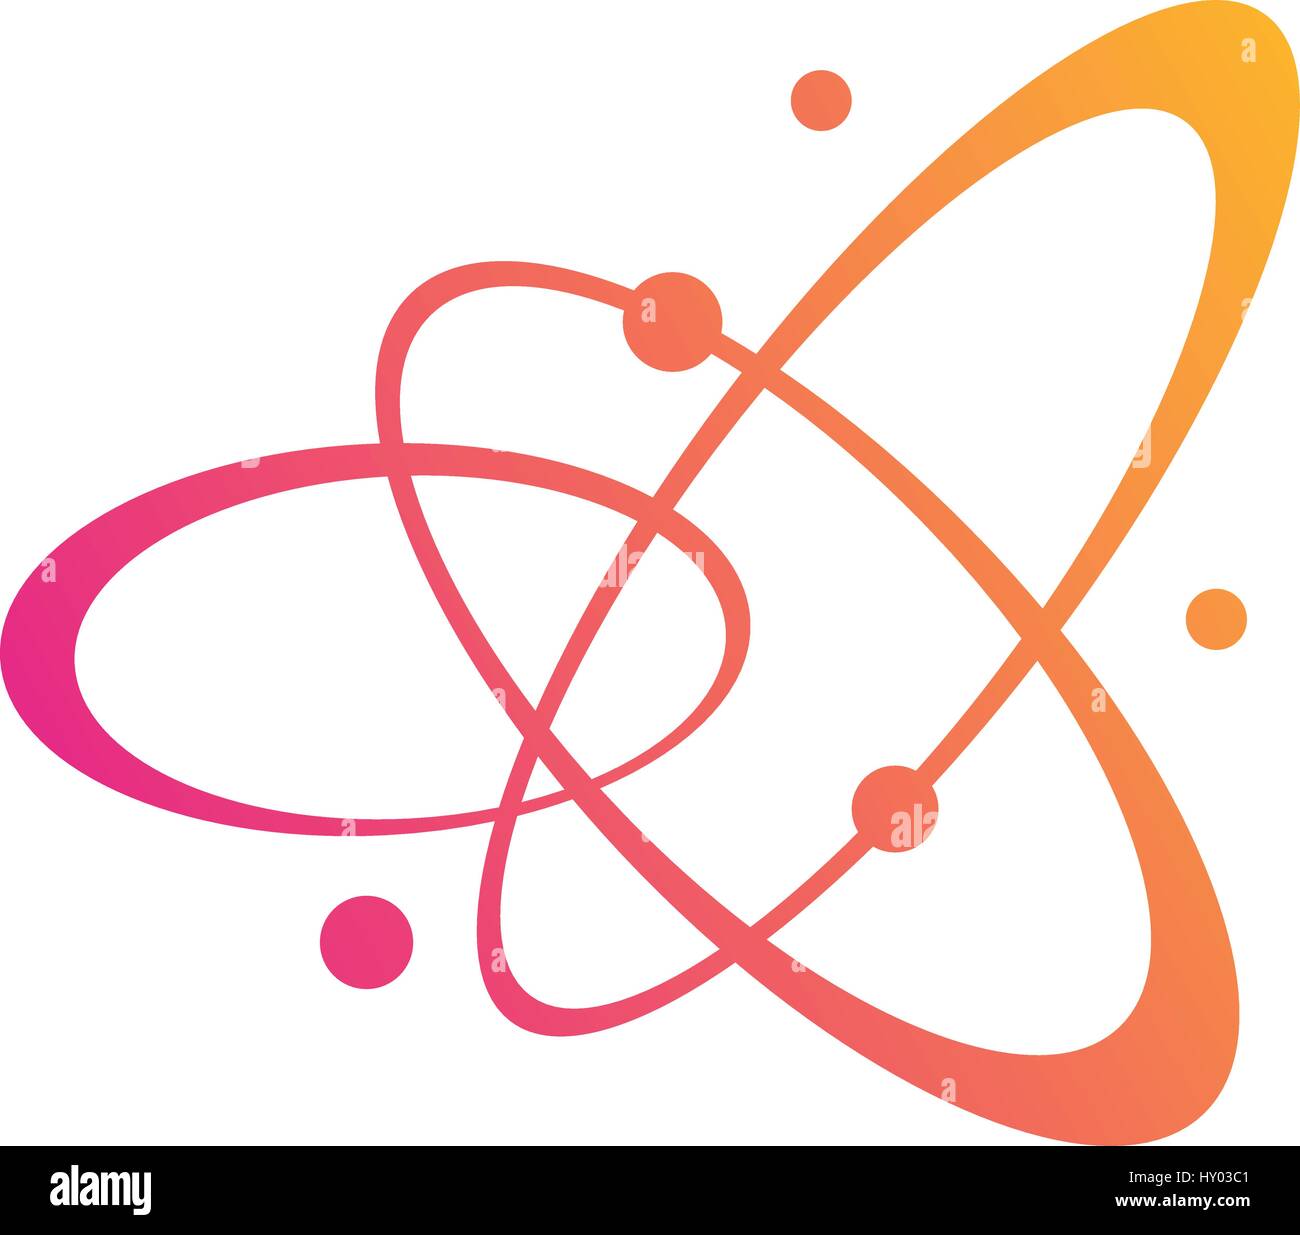 Atom orbiting design, vector illustration Stock Vector